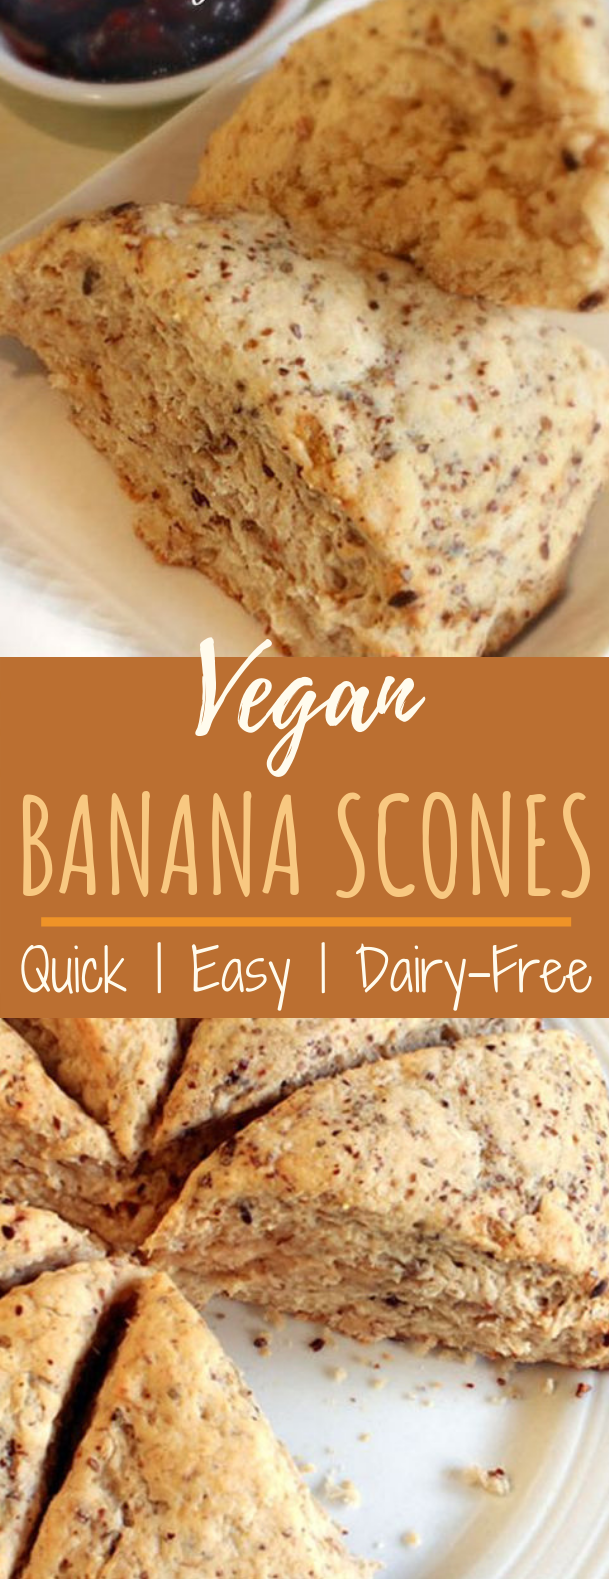 Quick & Easy Vegan Banana Scones #brunch #vegetarian